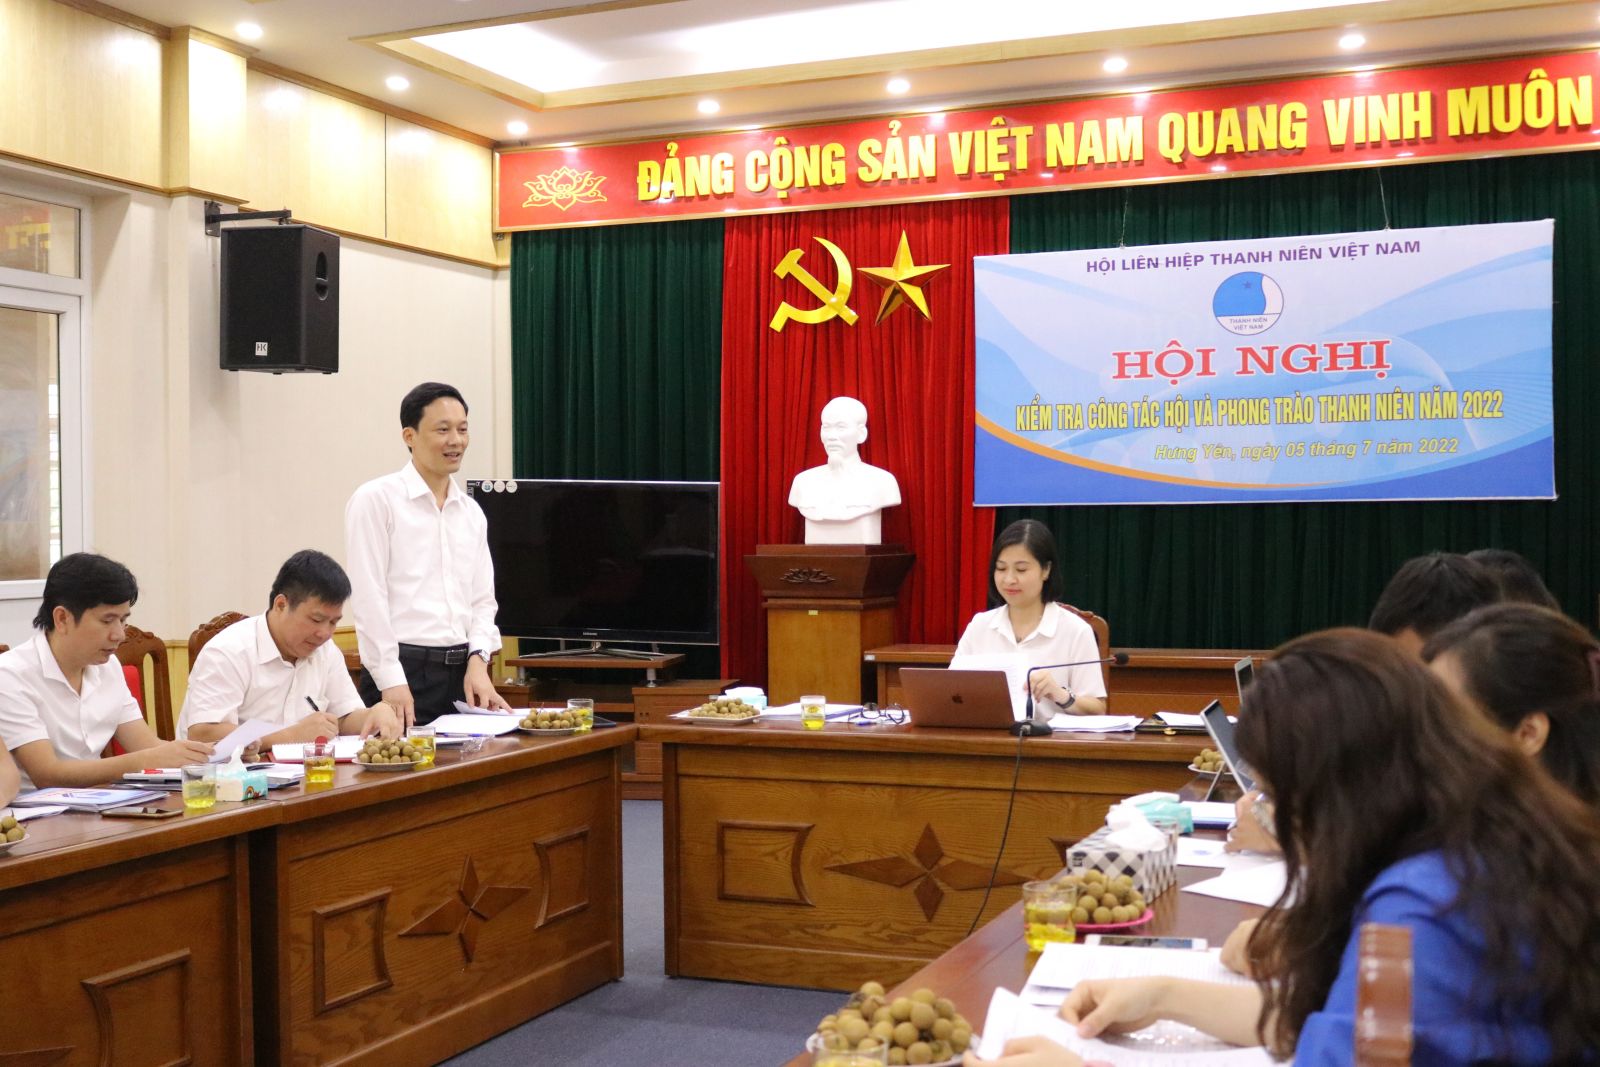 Trung ương Hội Liên hiệp Thanh niên Việt Nam kiểm tra công tác Hội và phong trào thanh niên năm 2022 tại tỉnh Hưng Yên